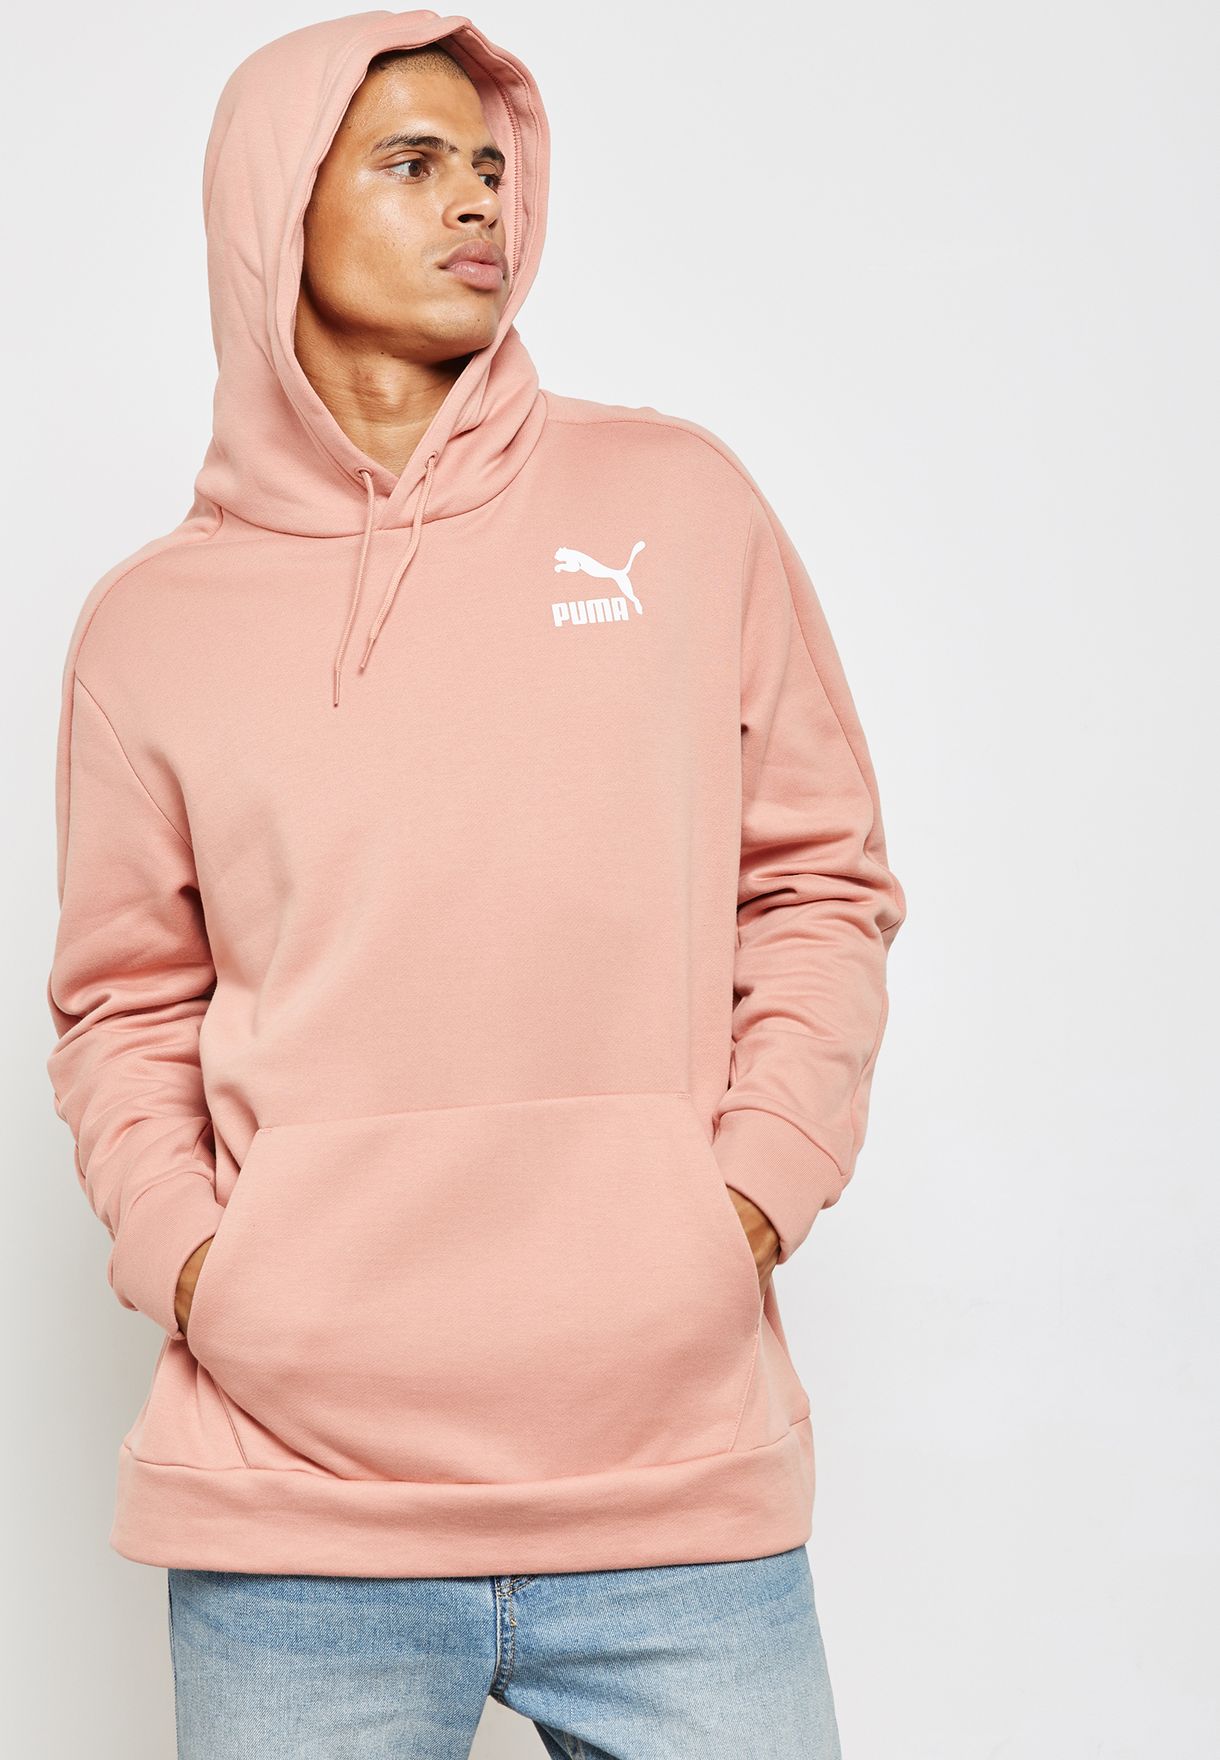 puma pink hoodie mens